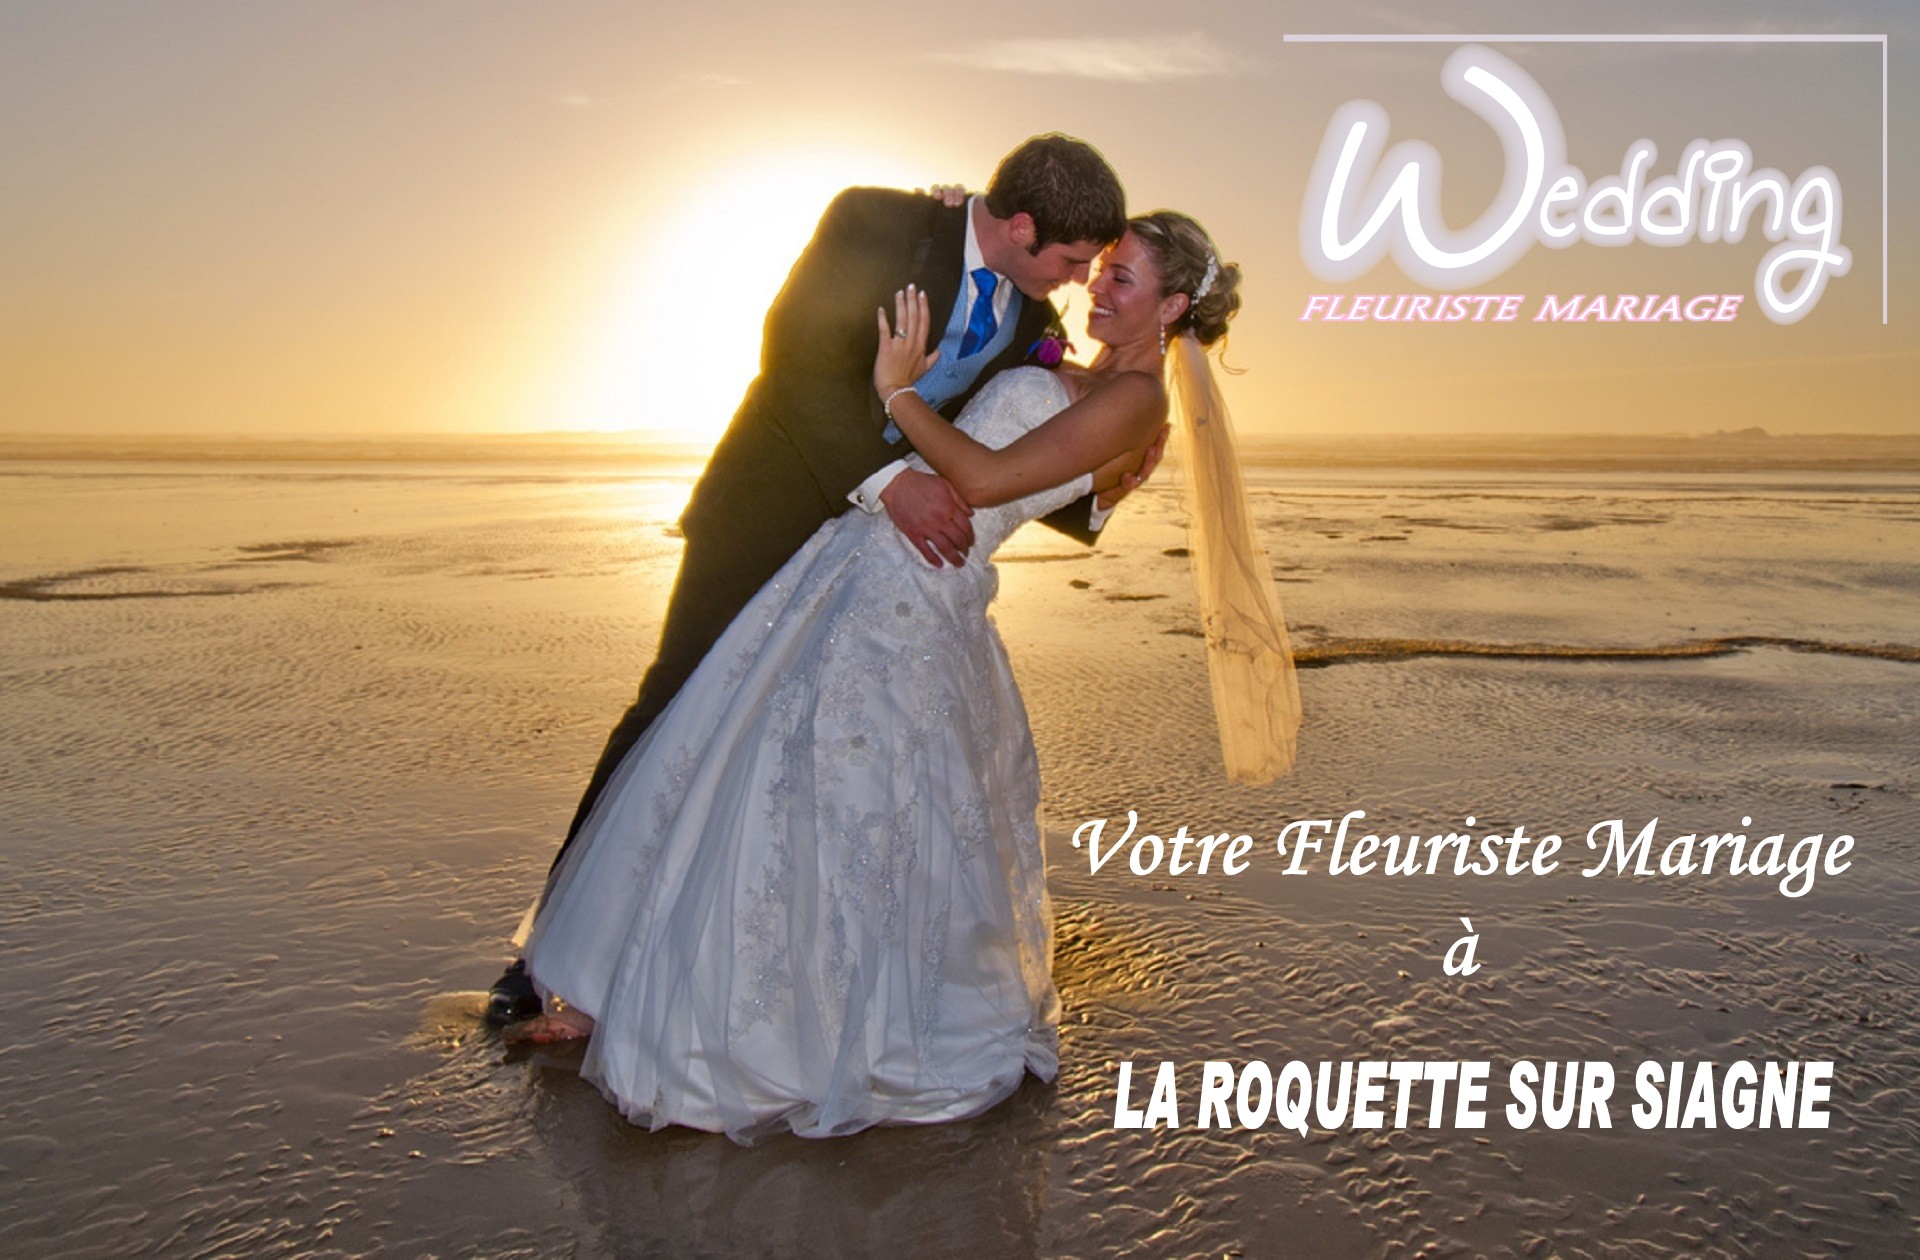 FLEURISTE MARIAGE LA ROQUETTE SUR SIAGNE - WEDDING PLANNER LA ROQUETTE SUR SIAGNE - TRAITEUR LA ROQUETTE SUR SIAGNE